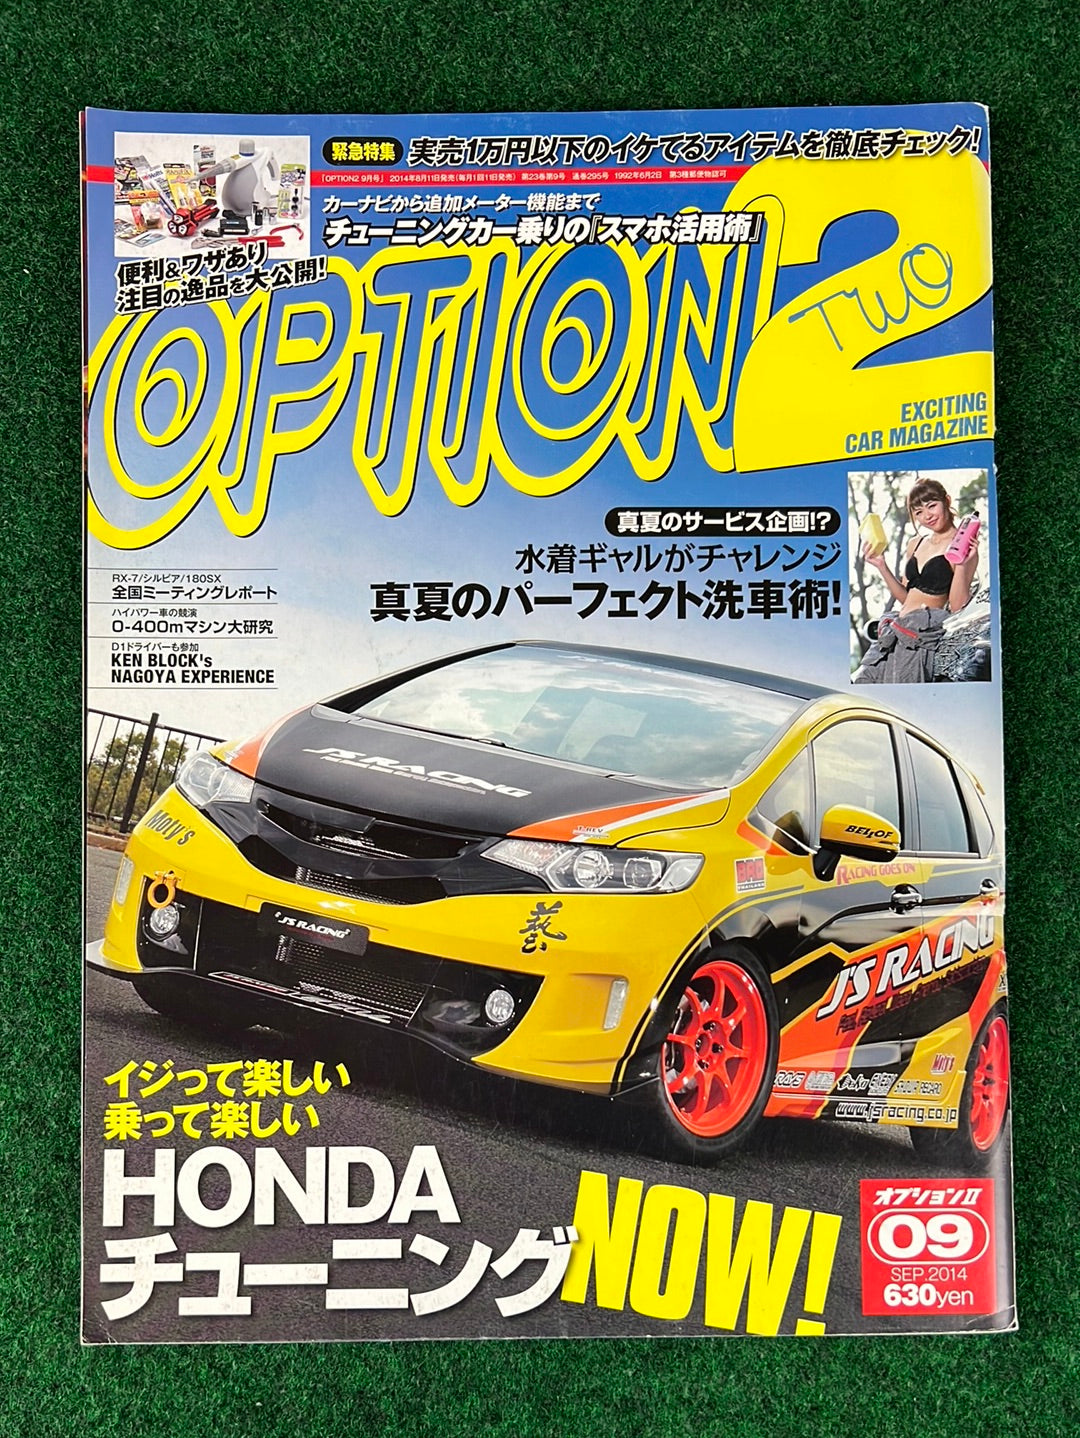 Option2 Magazine - September 2014